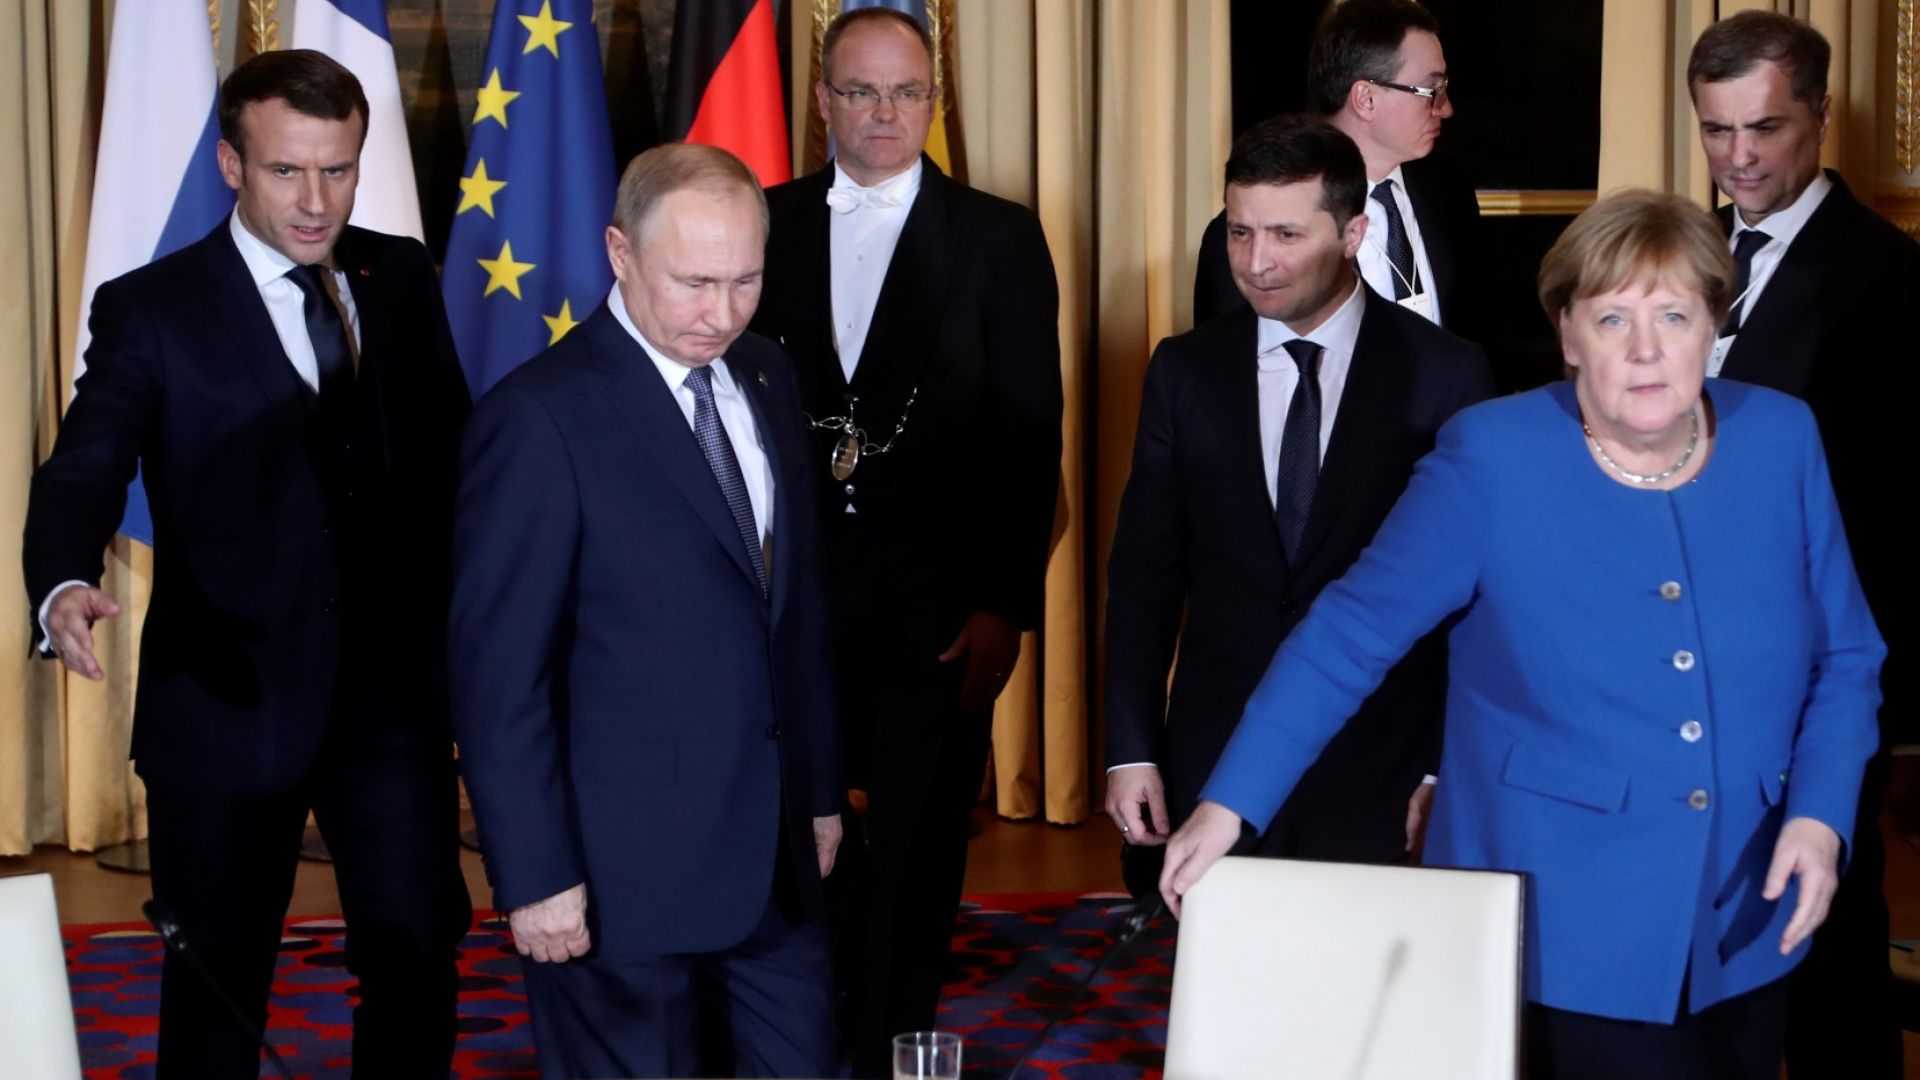 Президентите на Русия и Украйна Владимир Путин и Володимир Зеленски